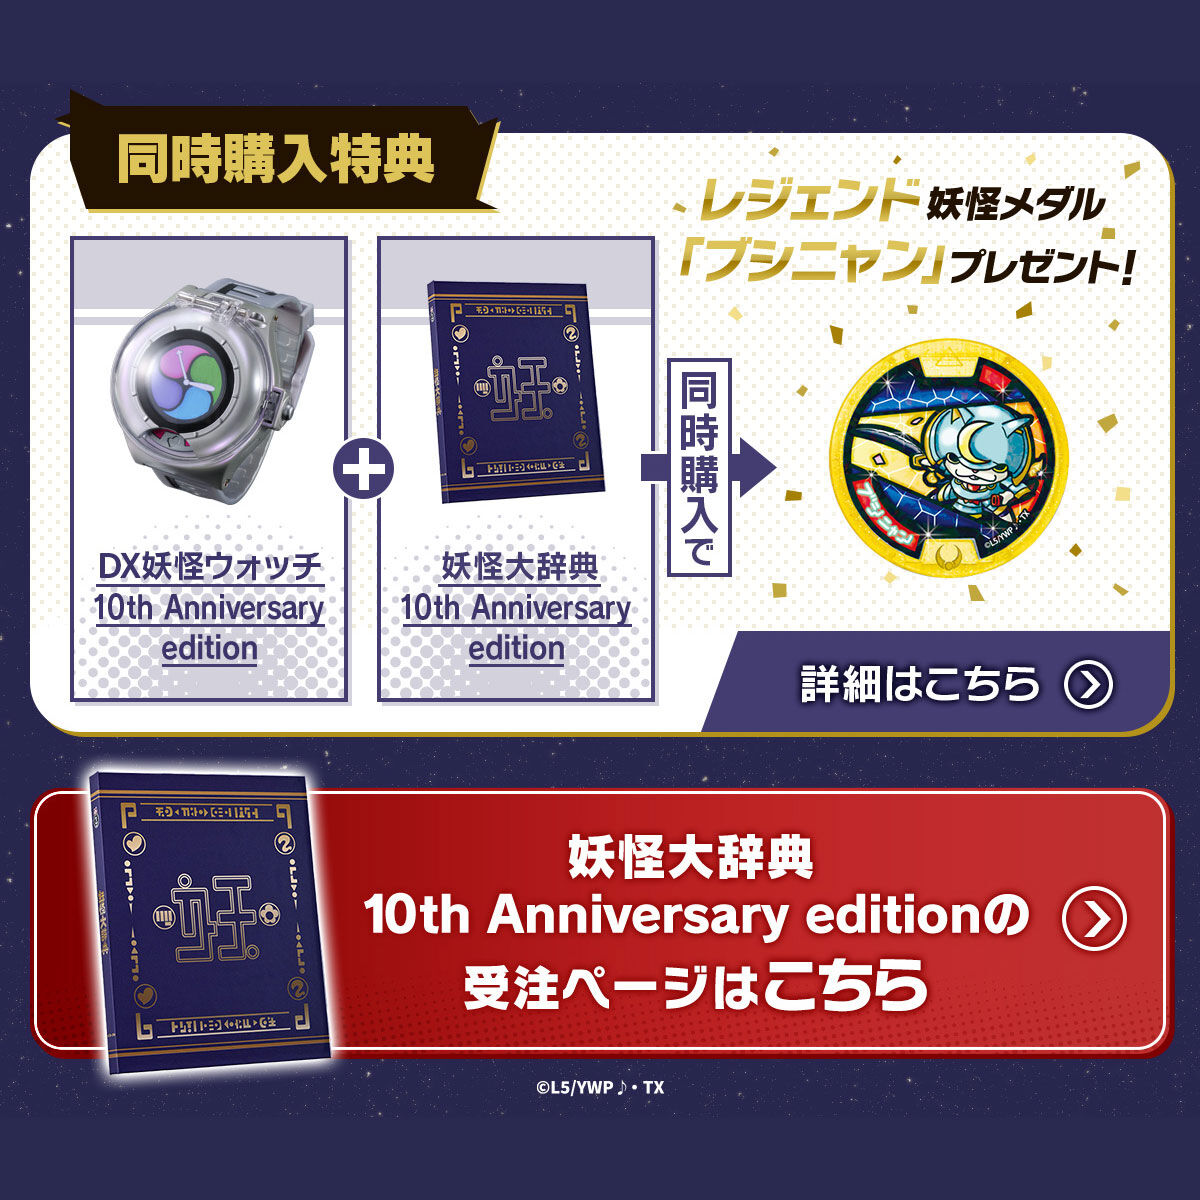 【限定販売】妖怪ウォッチ♪『DX妖怪ウォッチ 10th Anniversary edition』変身なりきり-009